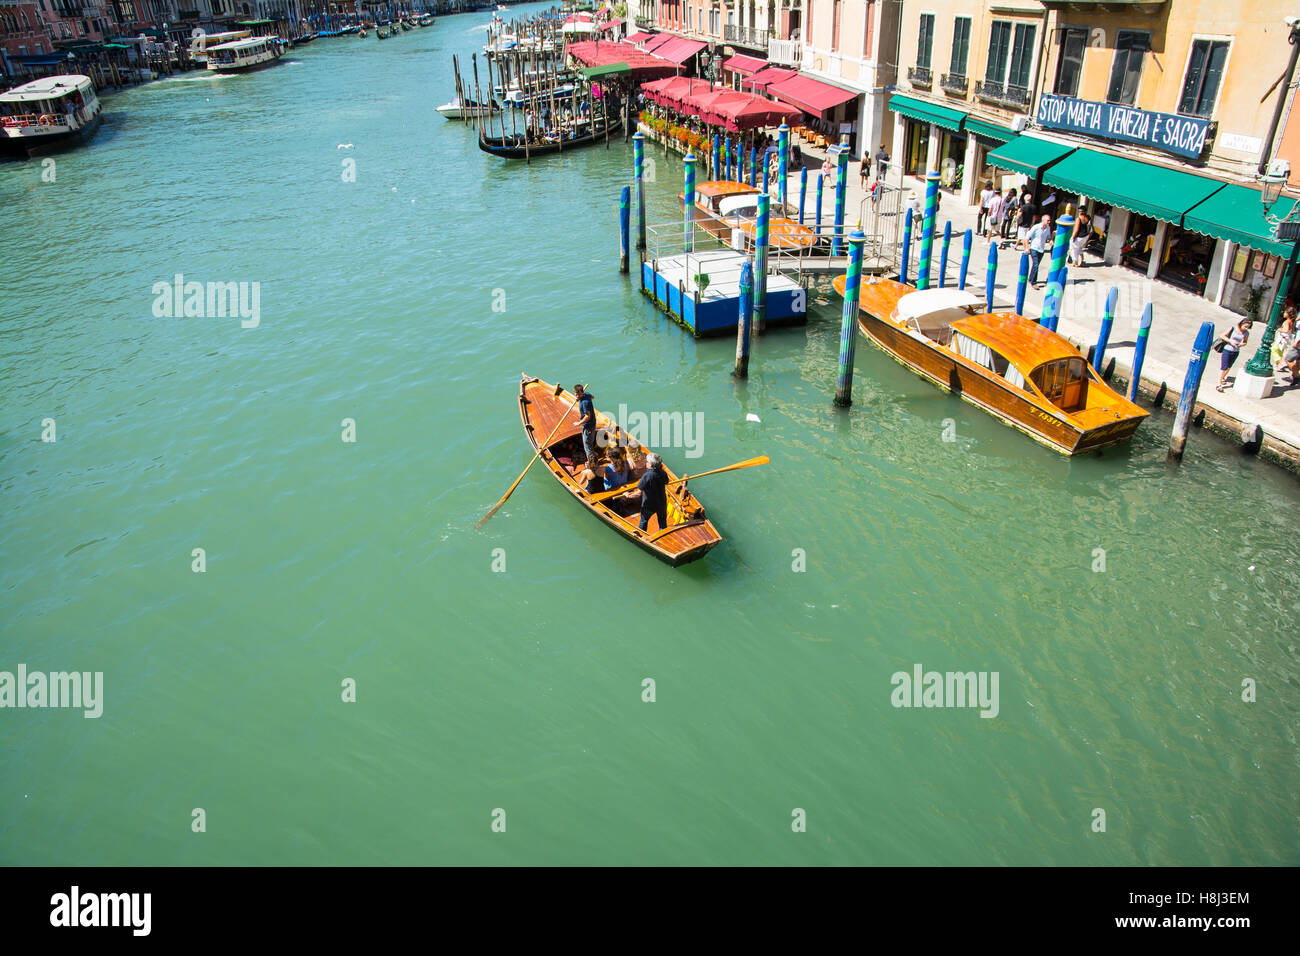 Venezia,Italy-August 17,2014:visualizzazione di una barca a remi con turisti sul Canal Grande di Venezia durante un giorno d'estate. Foto Stock